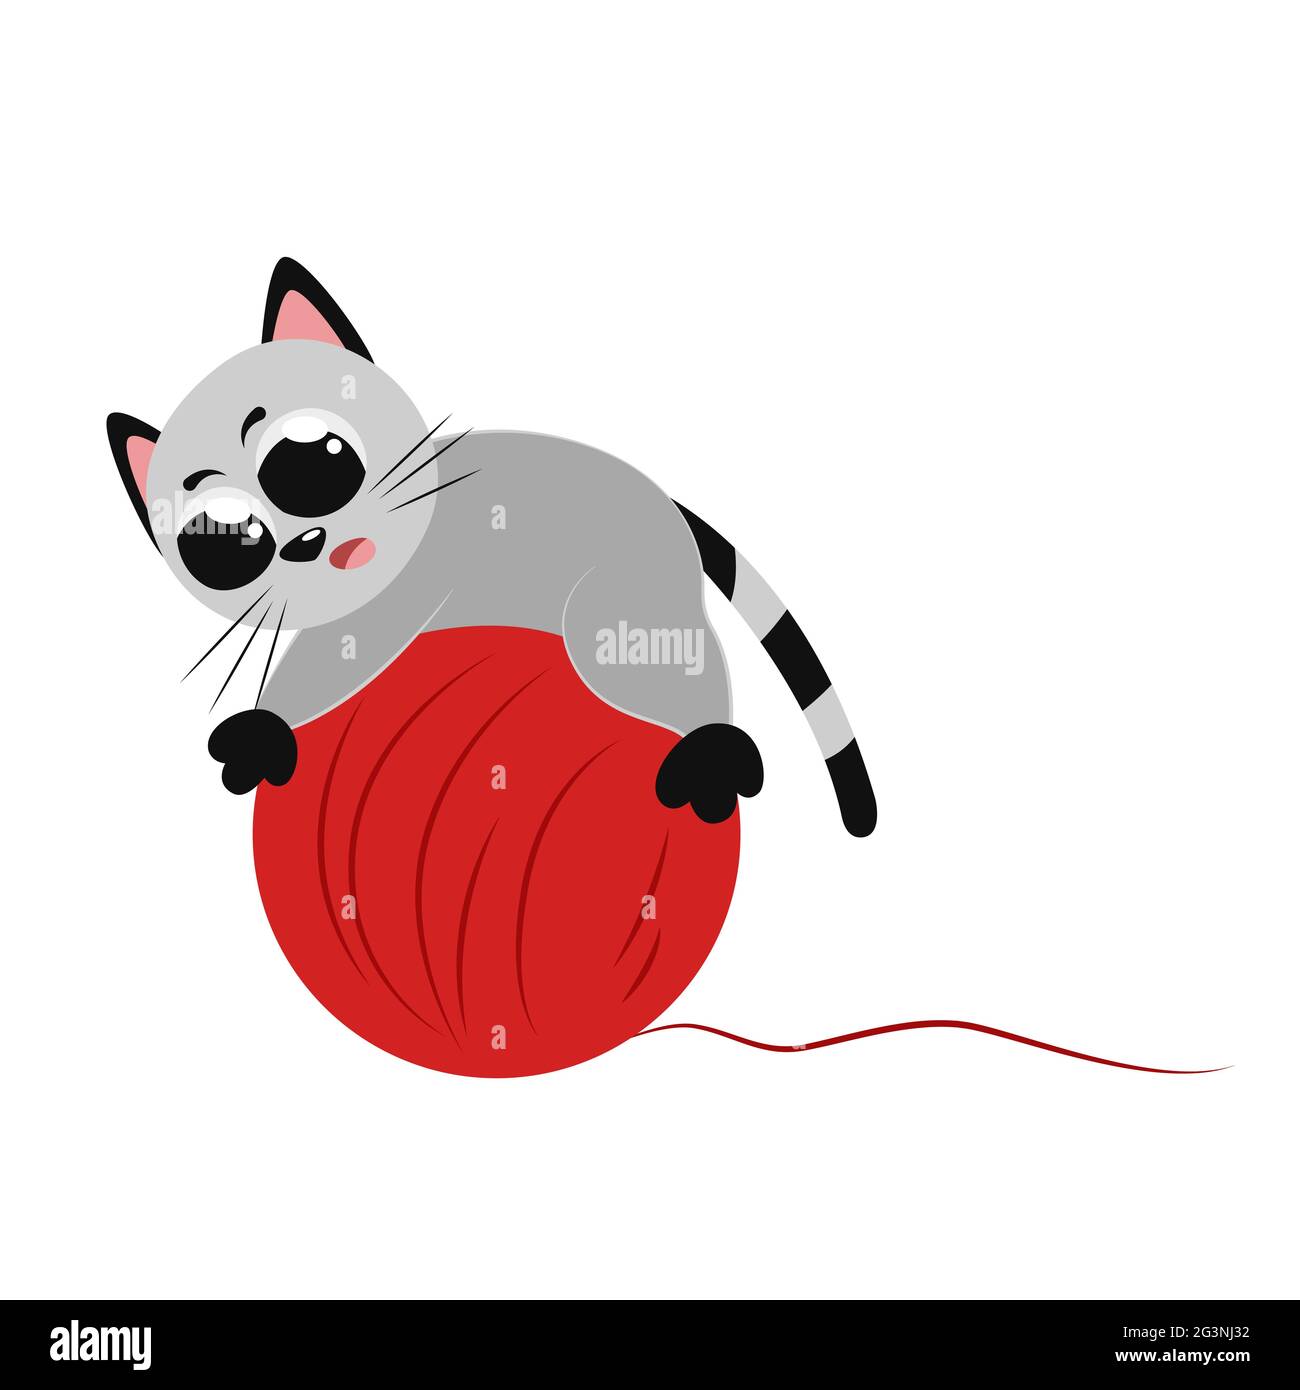 Nette lustige graue kleine Katze, die mit einem großen Ball aus roten Fäden spielt. Schöne farbige flache Illustration für Kinderzimmer-Dekor. Poster Design für Kinder Stock Vektor